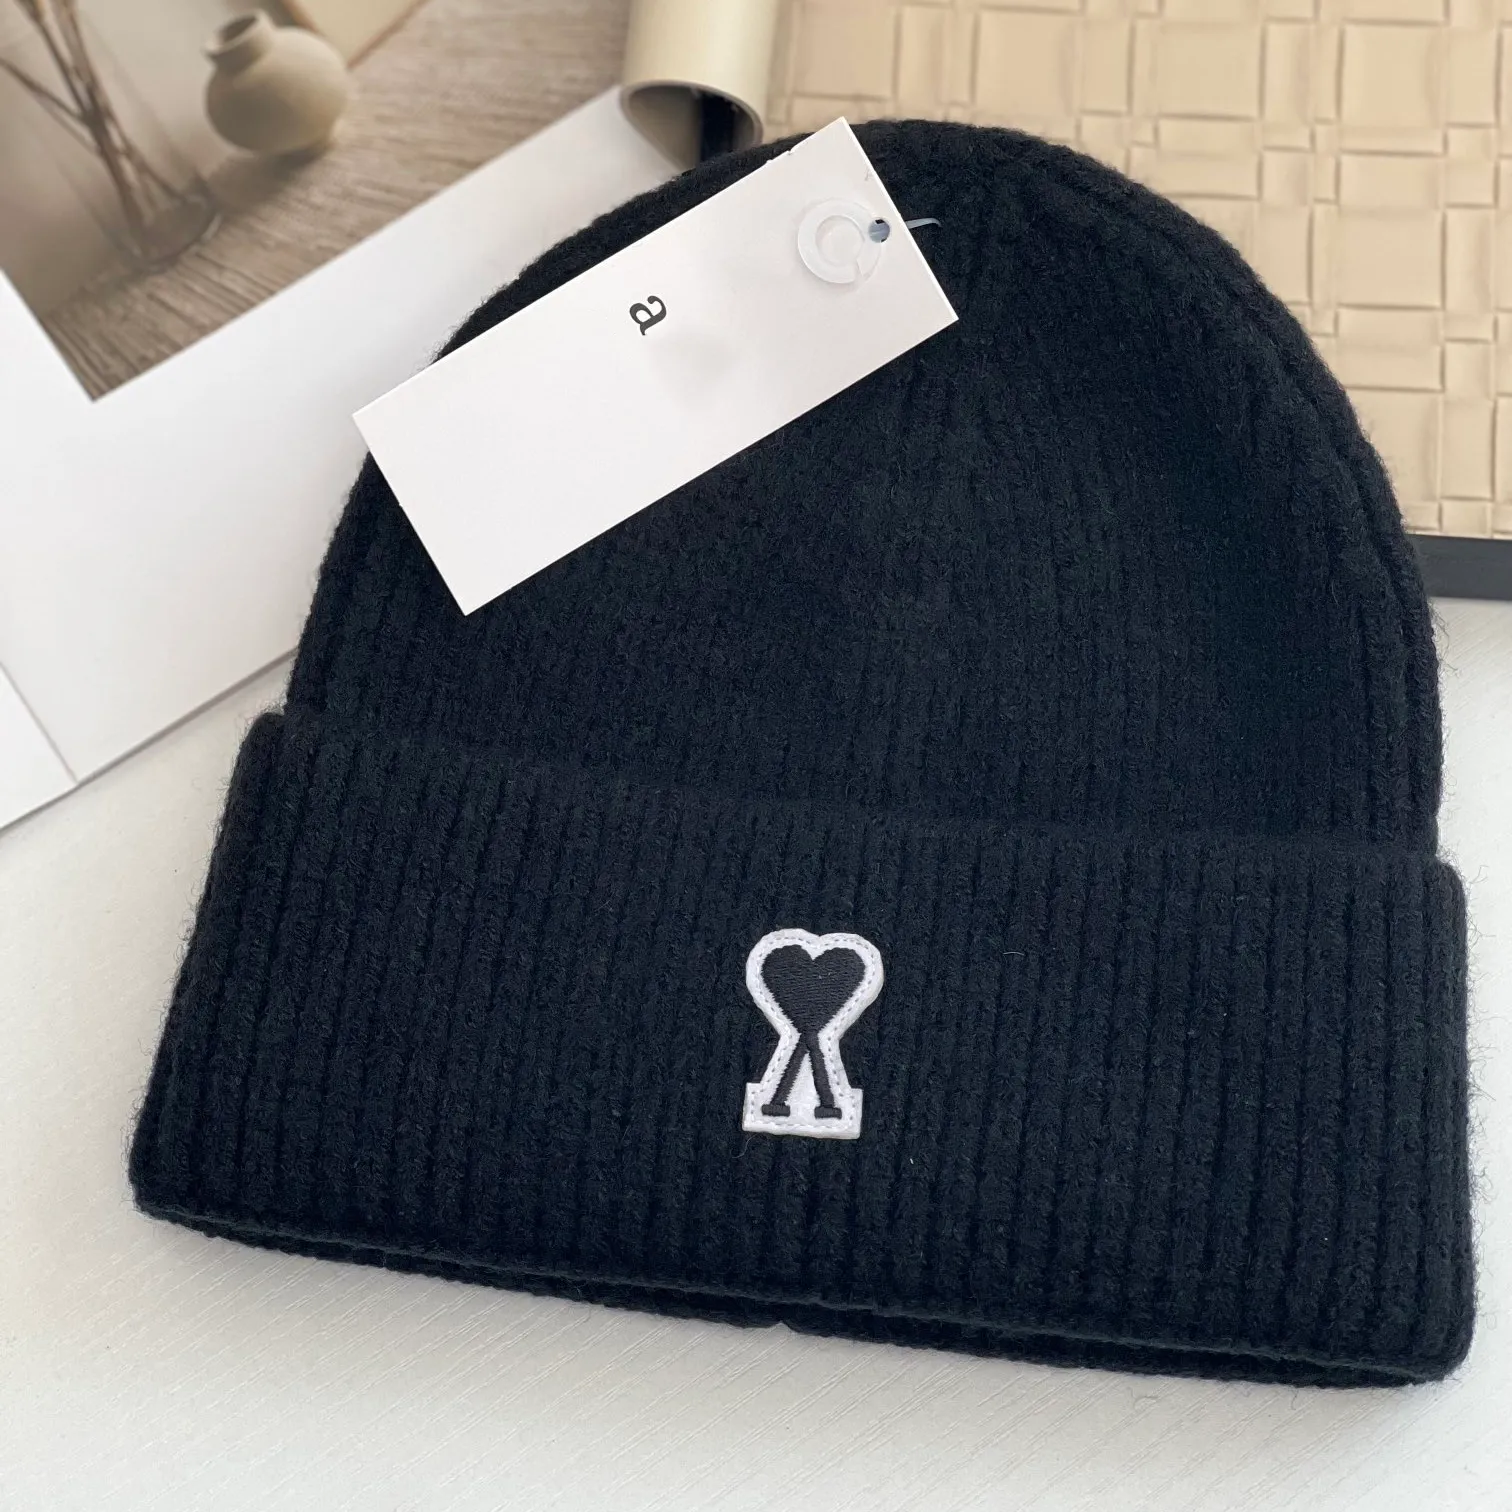 Bonnet de créateur Love logo tricot chapeau design de luxe chapeau chaud respirant exquis chapeau tendance automne hiver élégance polyvalent mode décontractée cadeau chaud